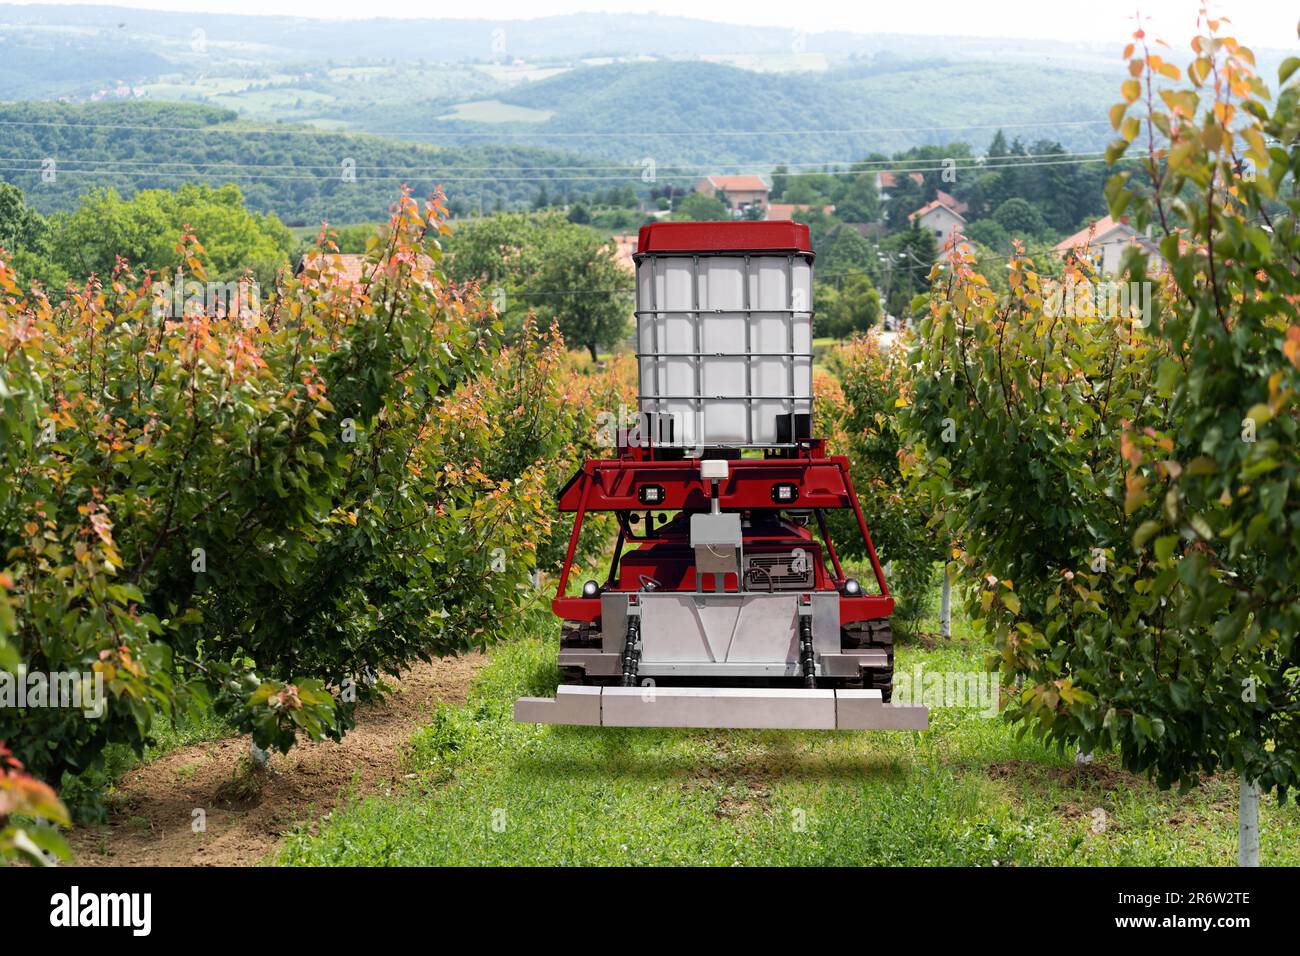 Autonomous robot sprayer works in a fruit garden. Smart farming concept Stock Photo